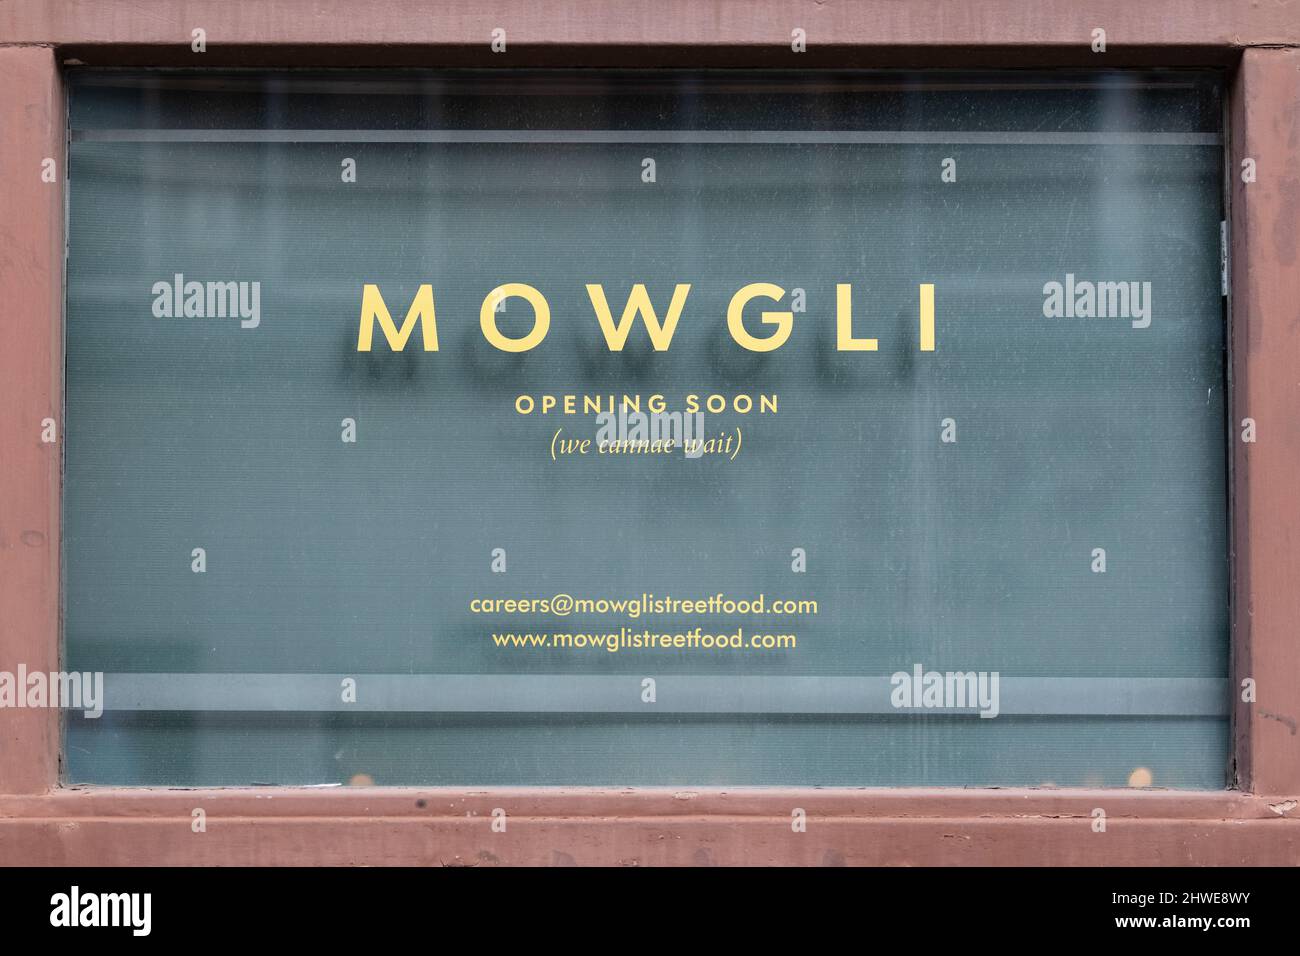 Mowgli-Restaurant wird bald eröffnet, Schild in Glasgow, Schottland, Großbritannien - „Eröffnung wird bald (wir können warten)“ Stockfoto